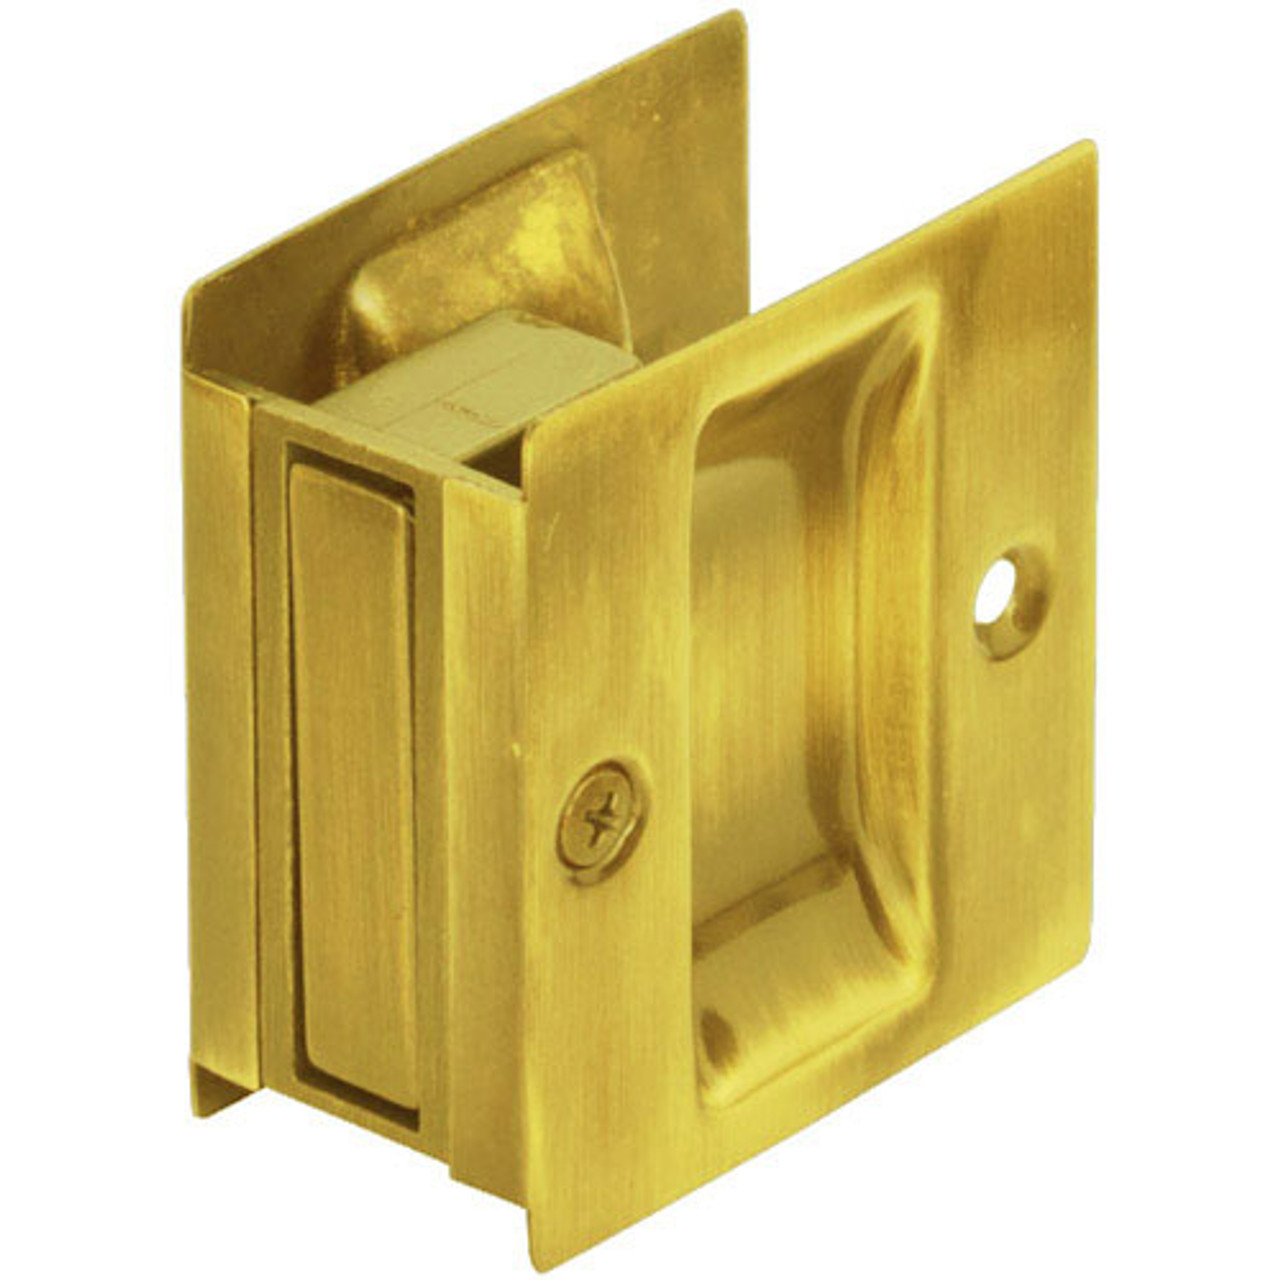 PDL-100-605 Don Jo Pocket Door Lock in Bright Brass Finish